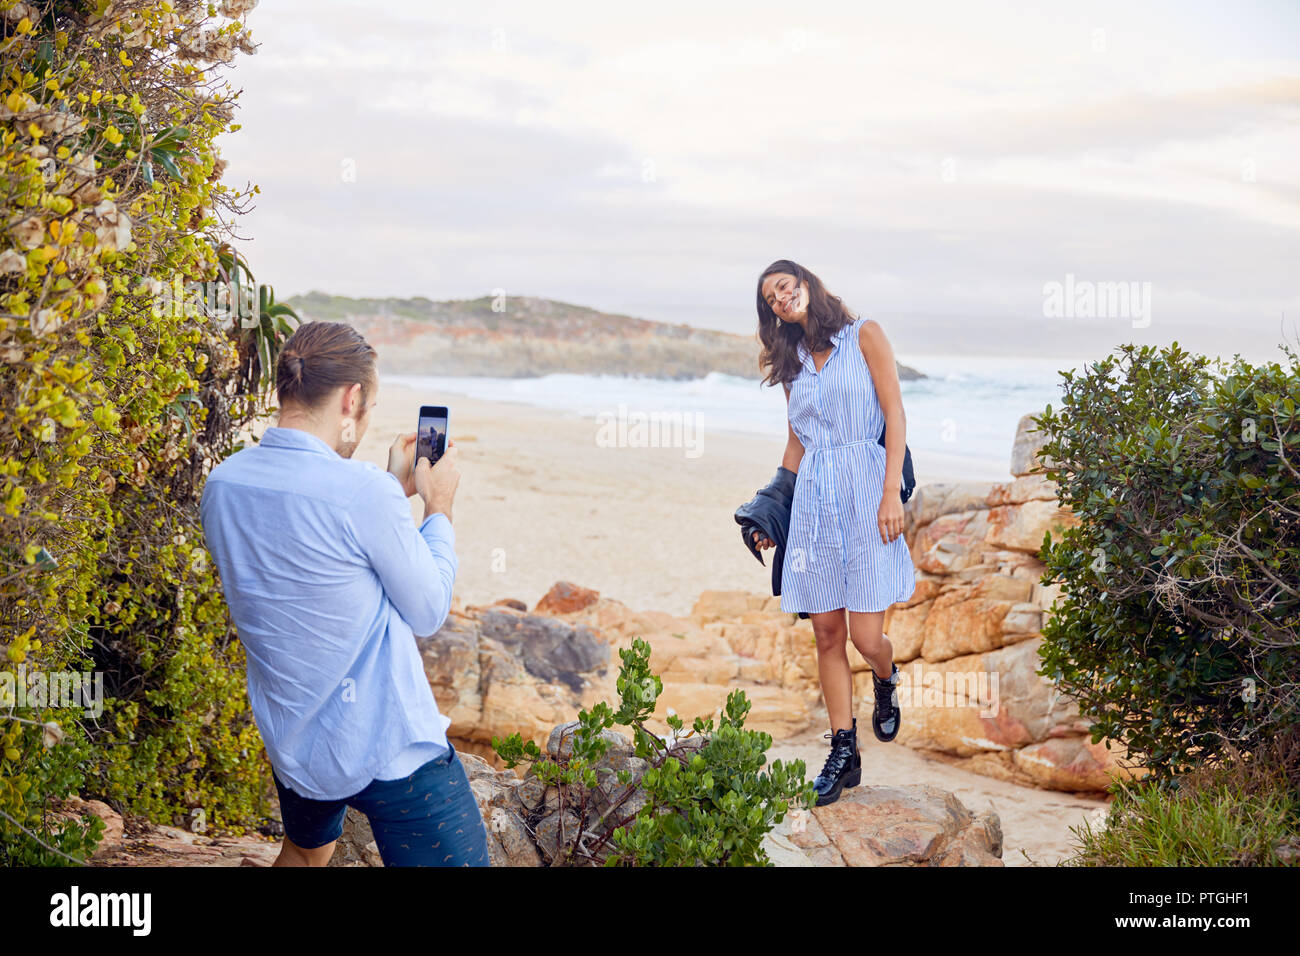 Junger Mann mit smart phone fotografieren Freundin mit Blick auf das Meer im Hintergrund Stockfoto